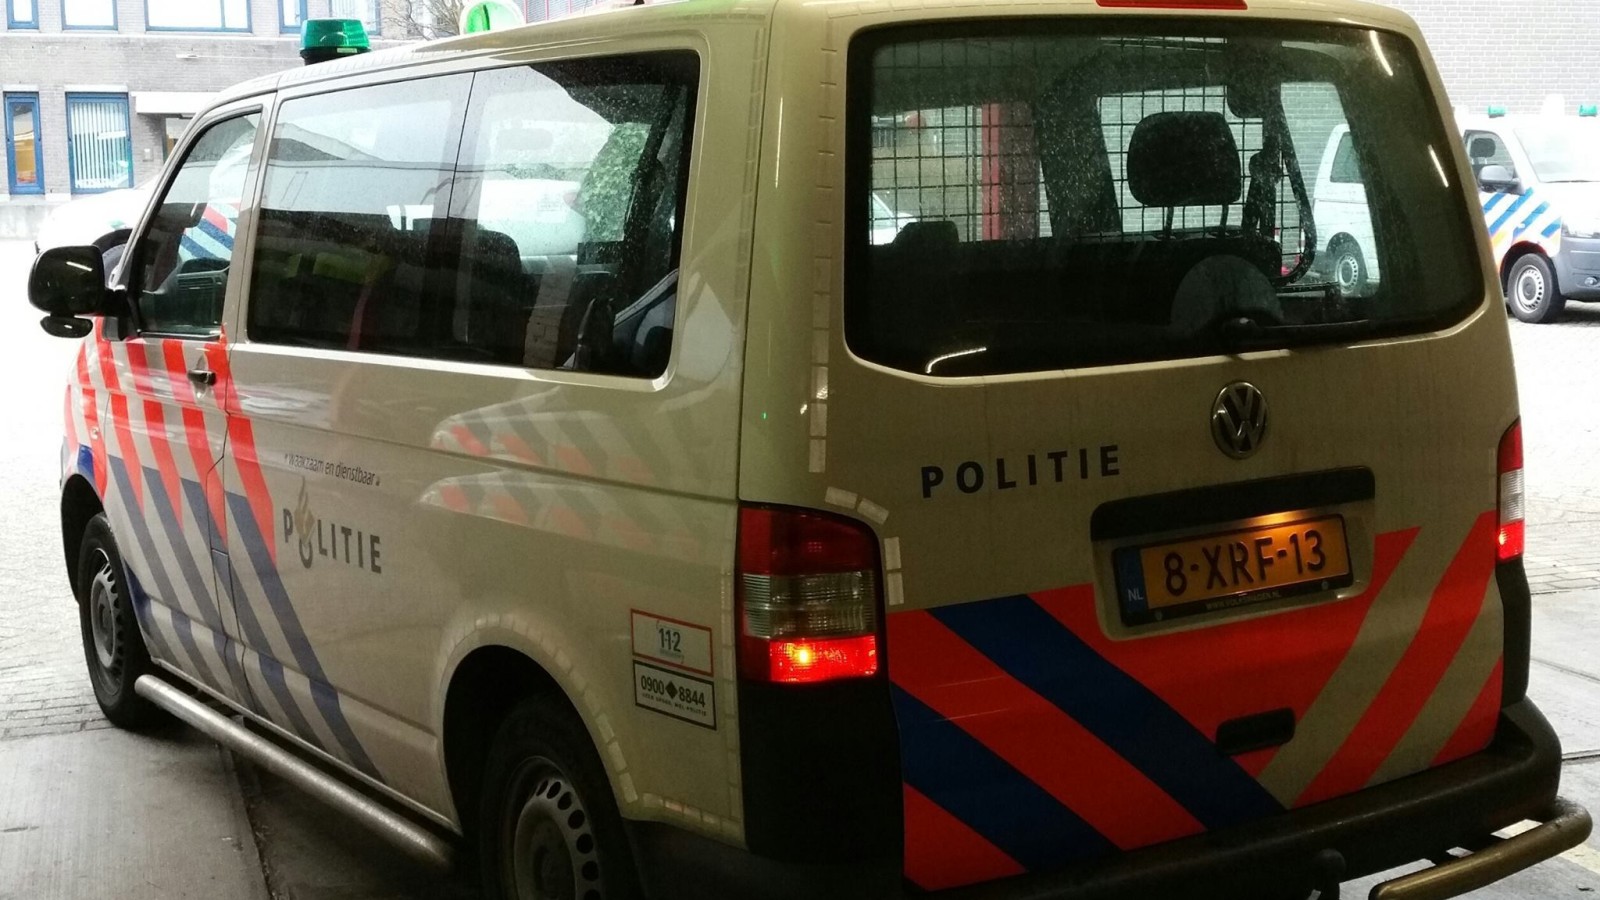 BES puppy Op het randje Vanavond extra politiecontrole met groen zwaailicht in Heemskerk - NH Nieuws